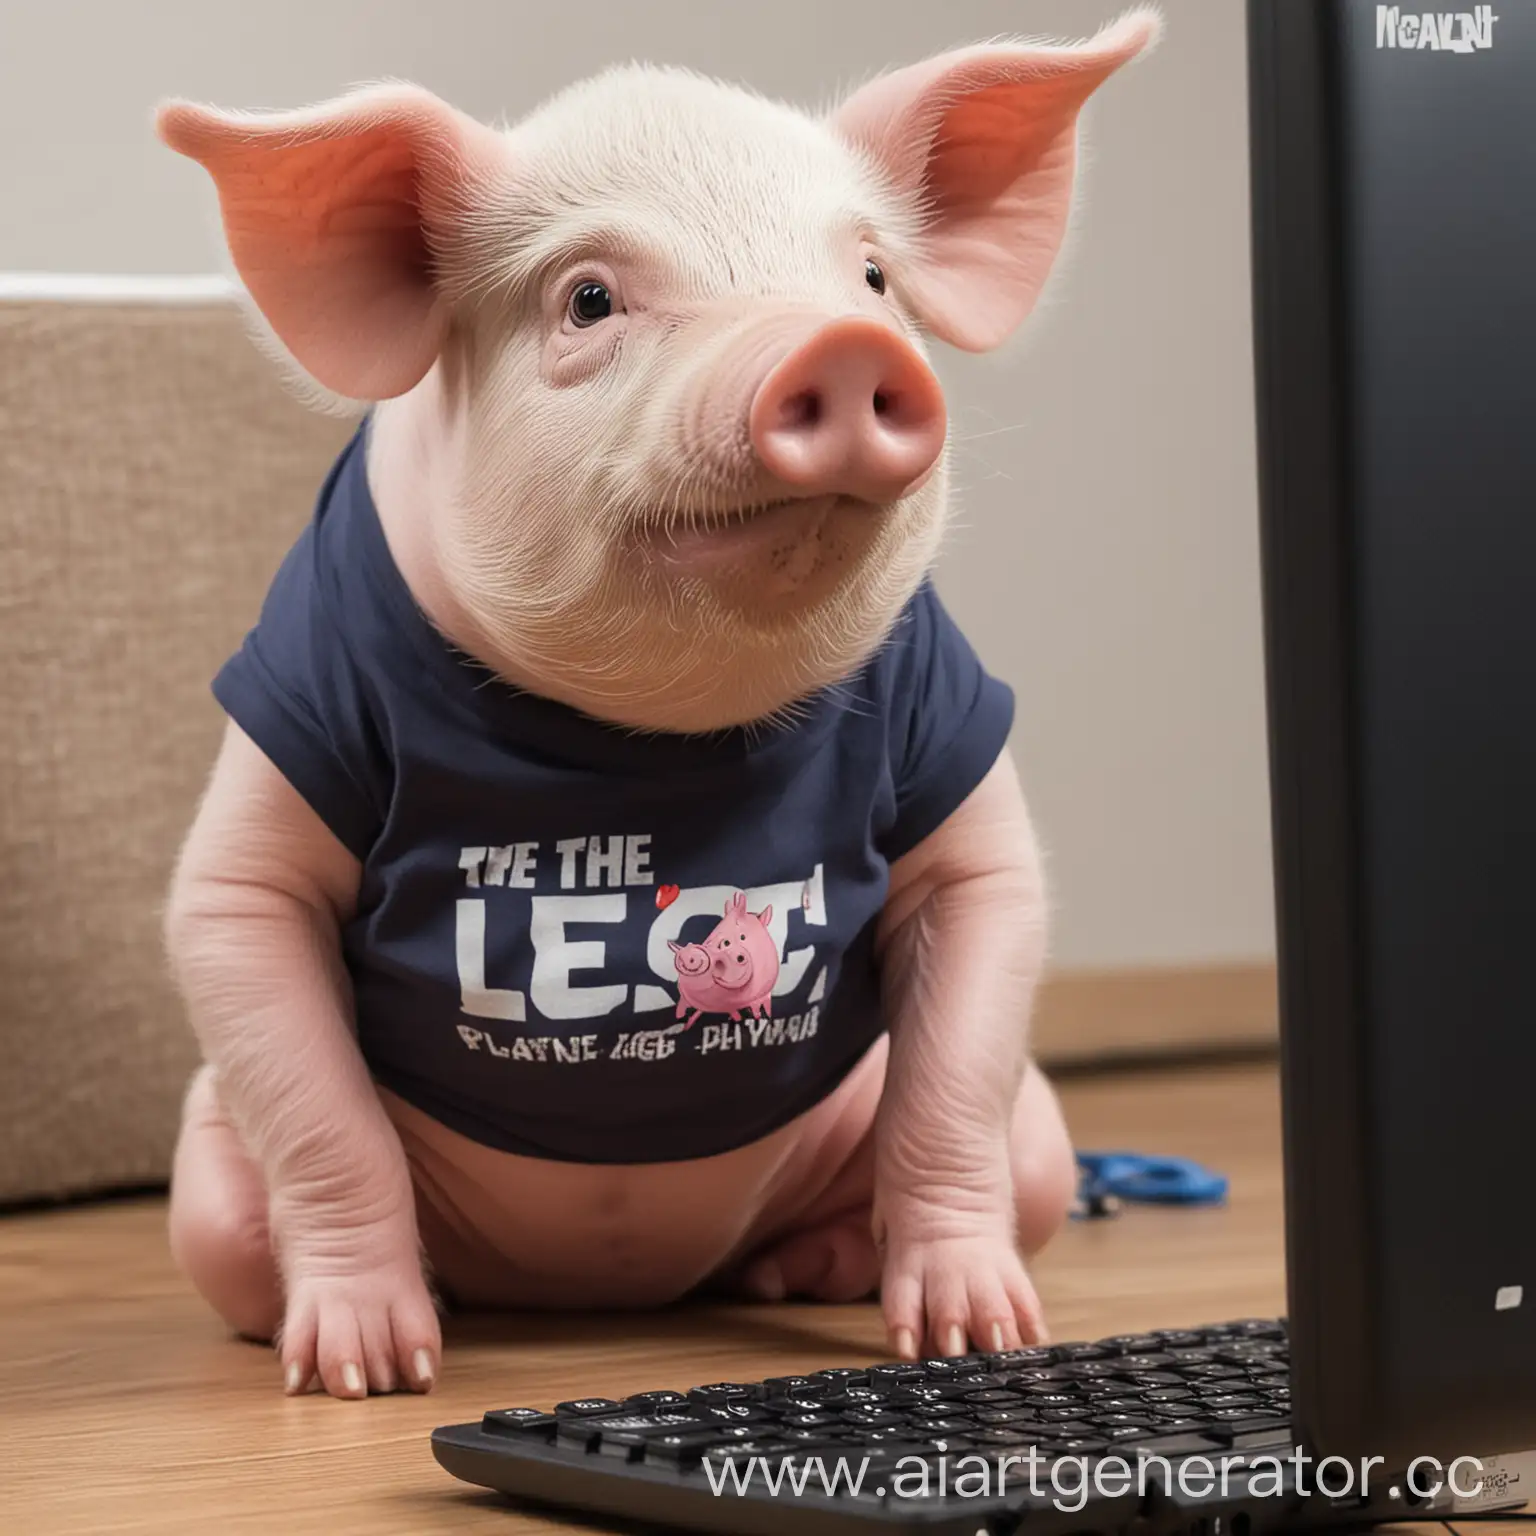 Свинья с футболкой, на которой написано theleg1t3 играет в компьютер